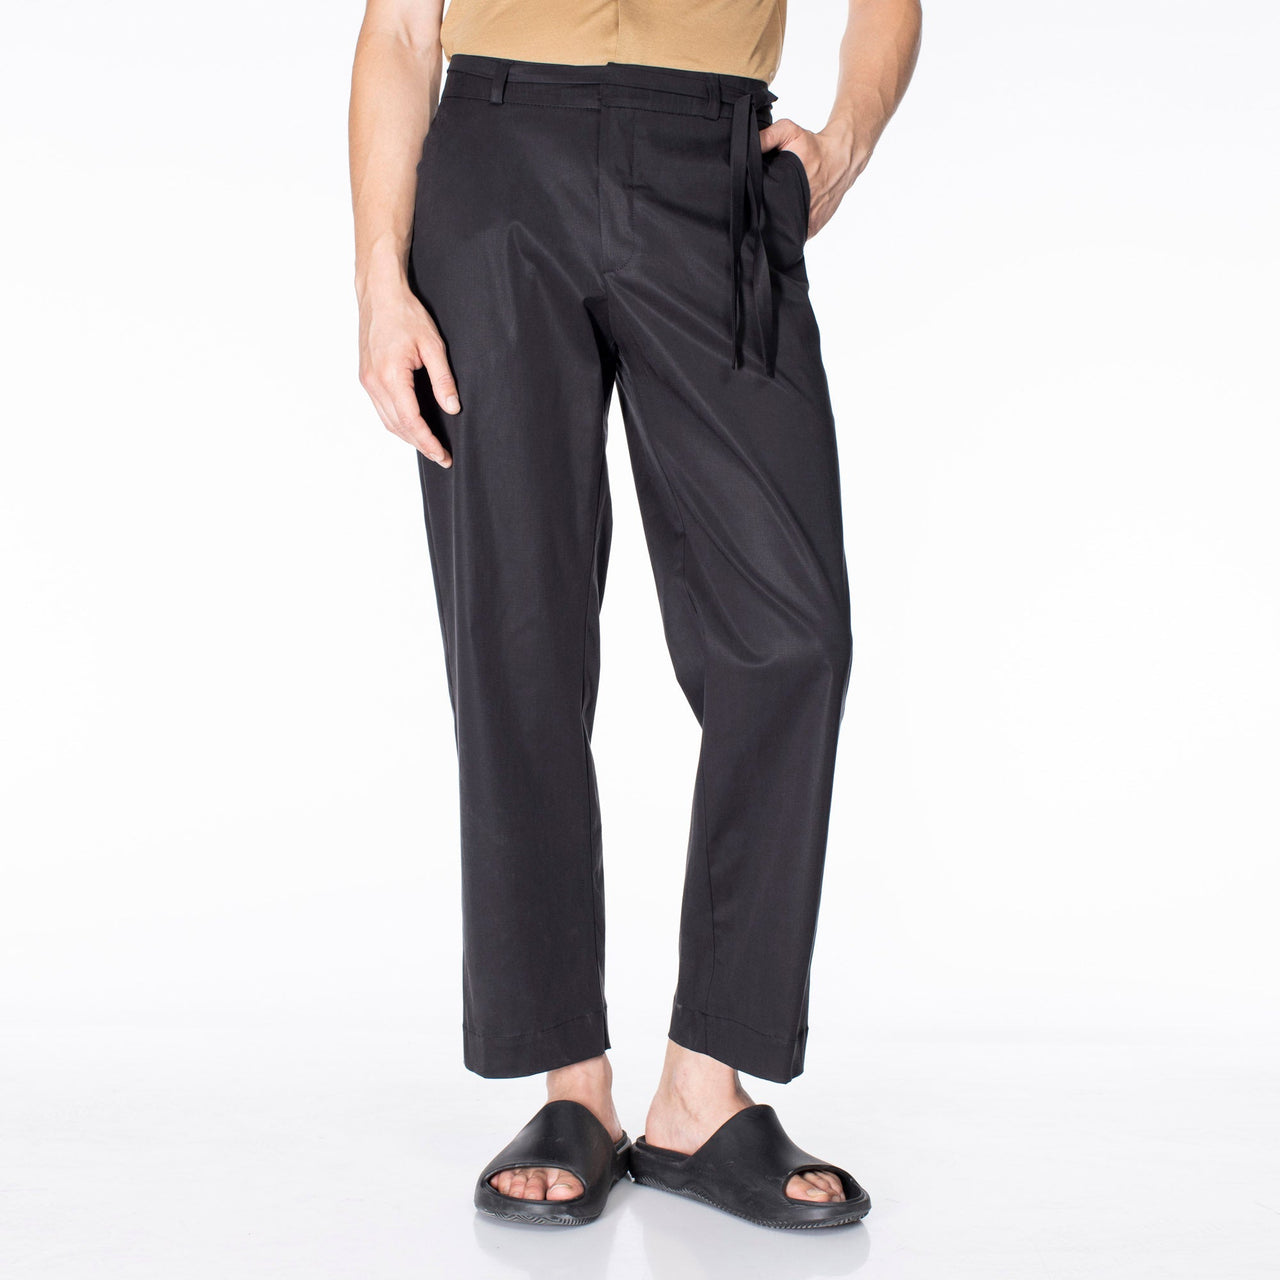 SASHA pants (32-50) - black